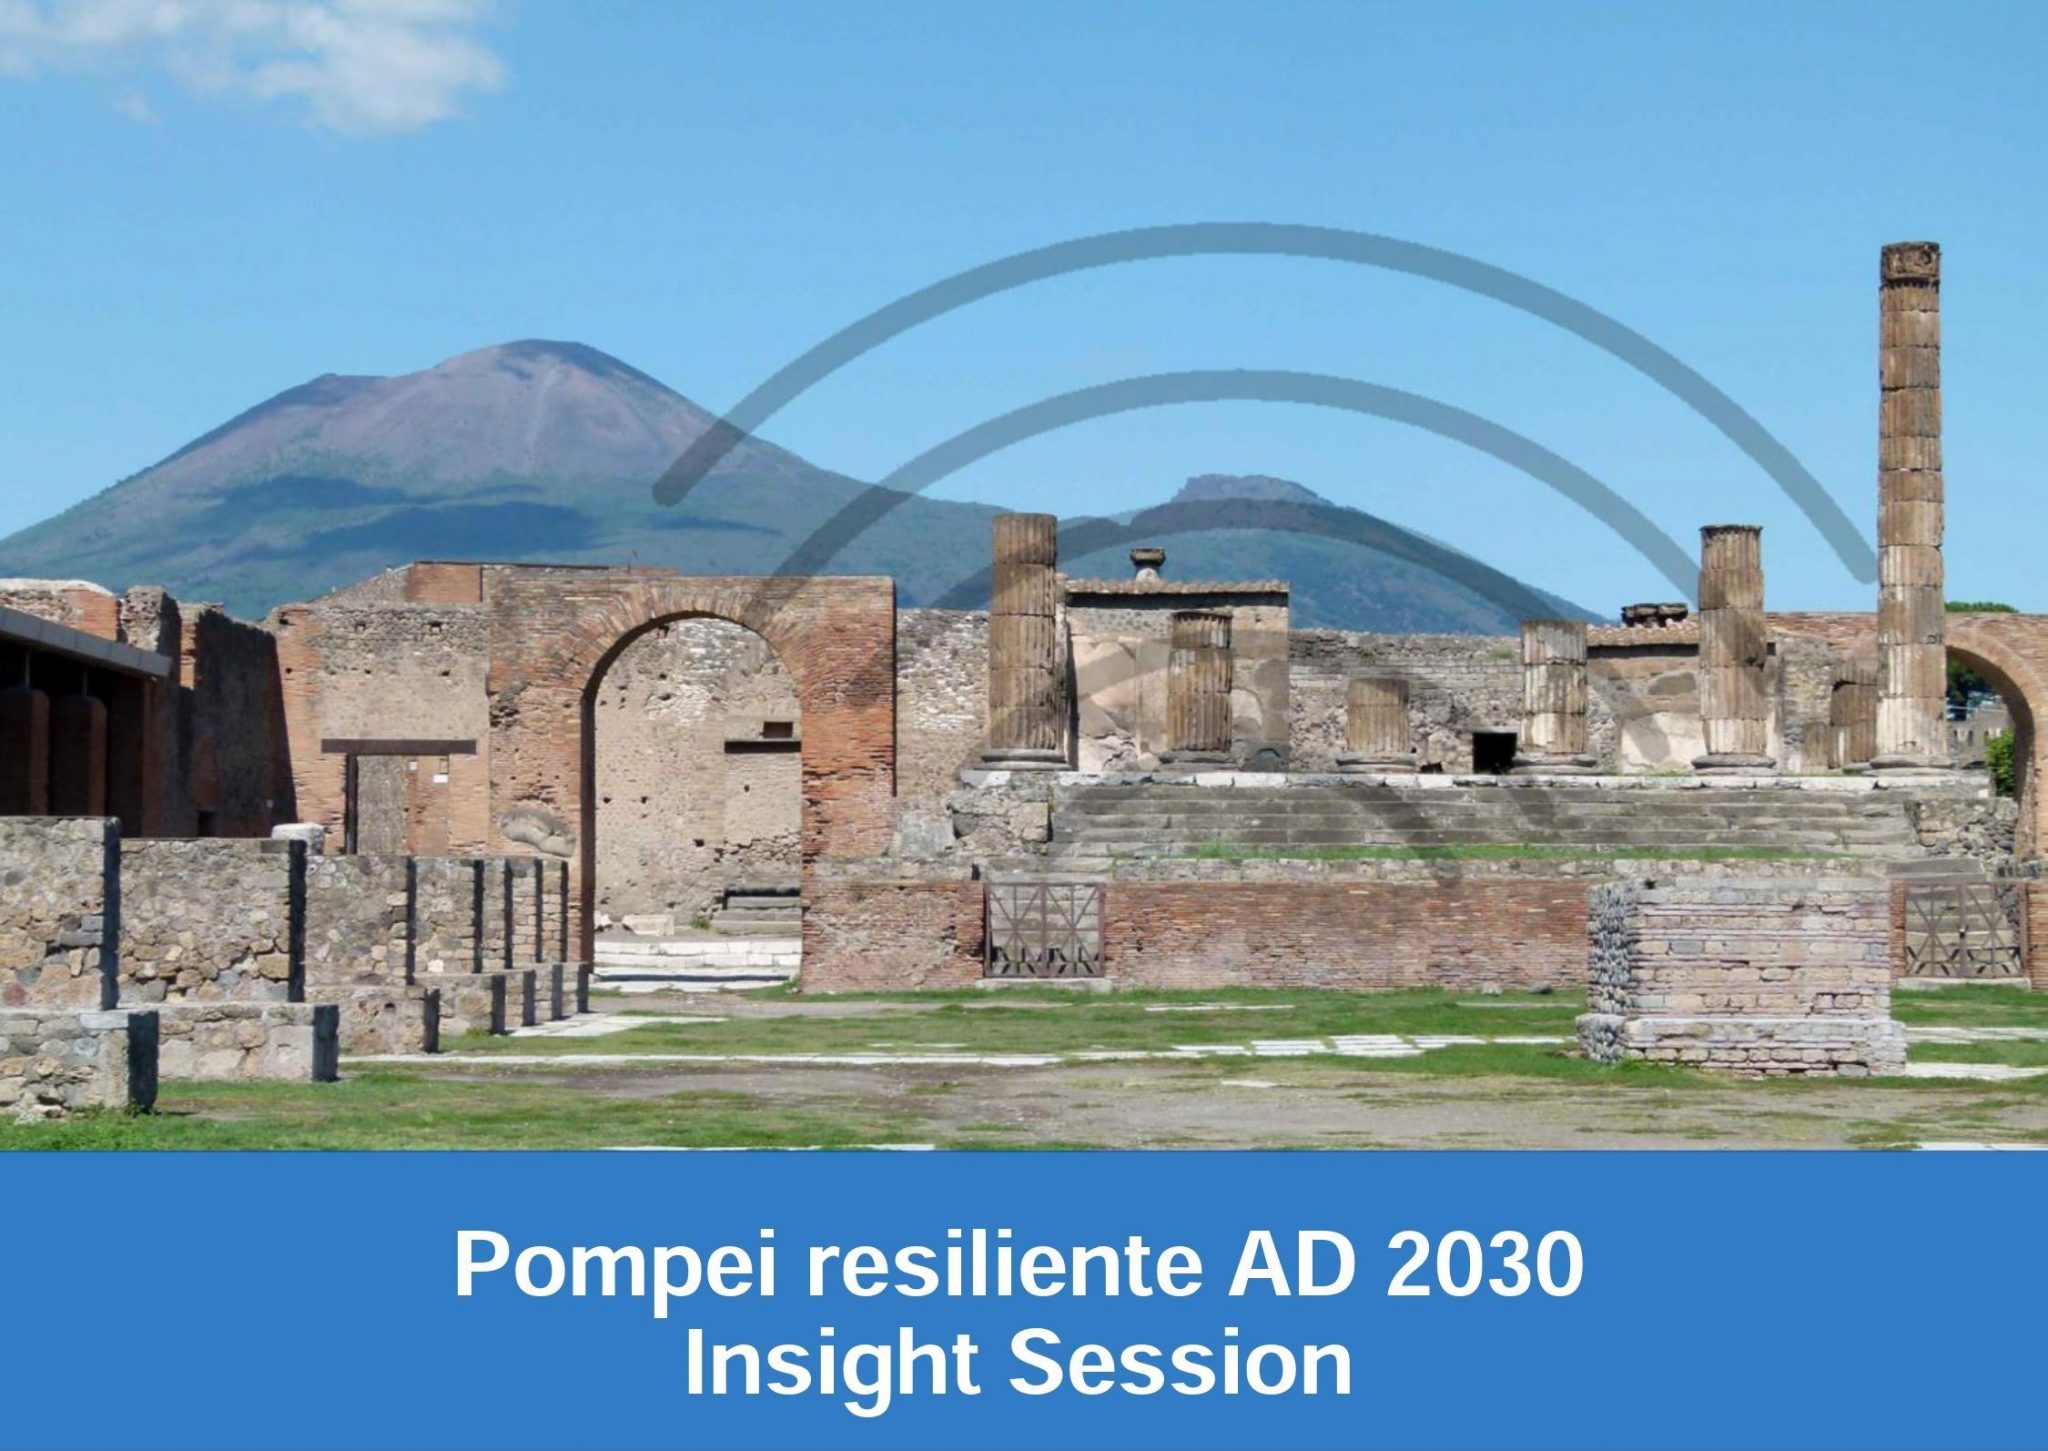 Il progetto Smart@Pompei, diventa Smart@land. Innovazione tecnologica e culturale su tutto il territorio regionale